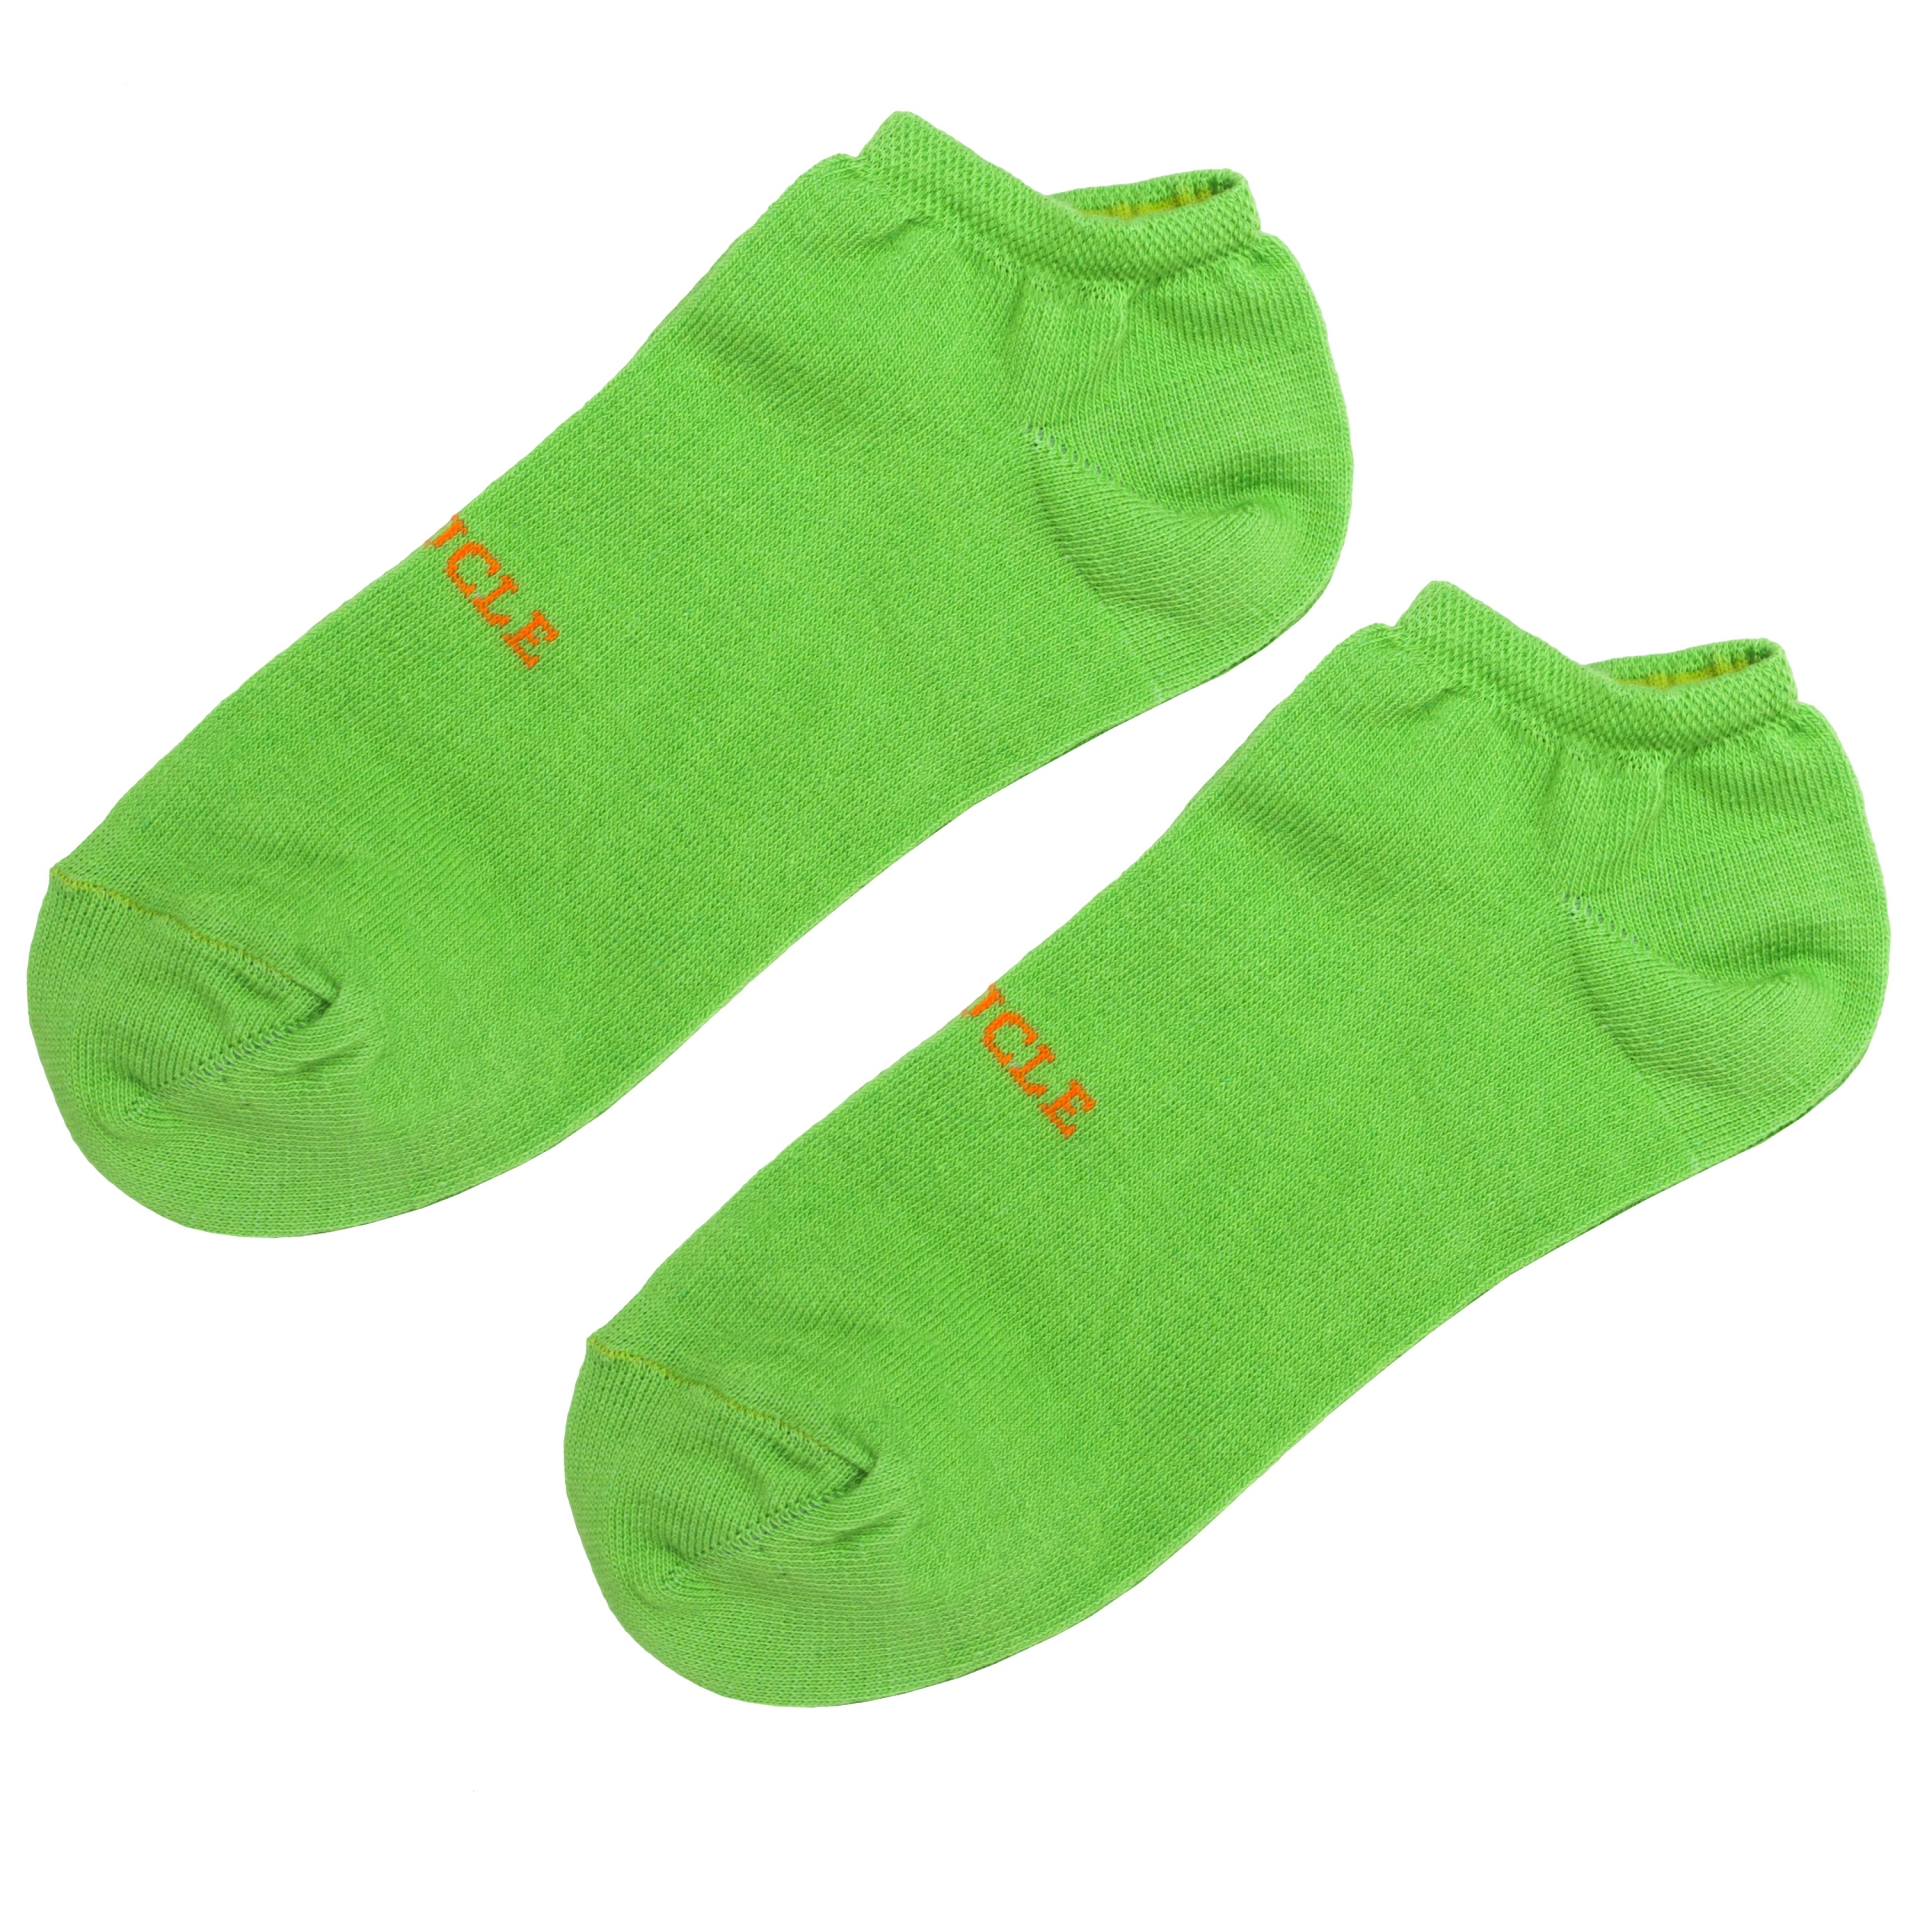 Ankle socks green fluo for men